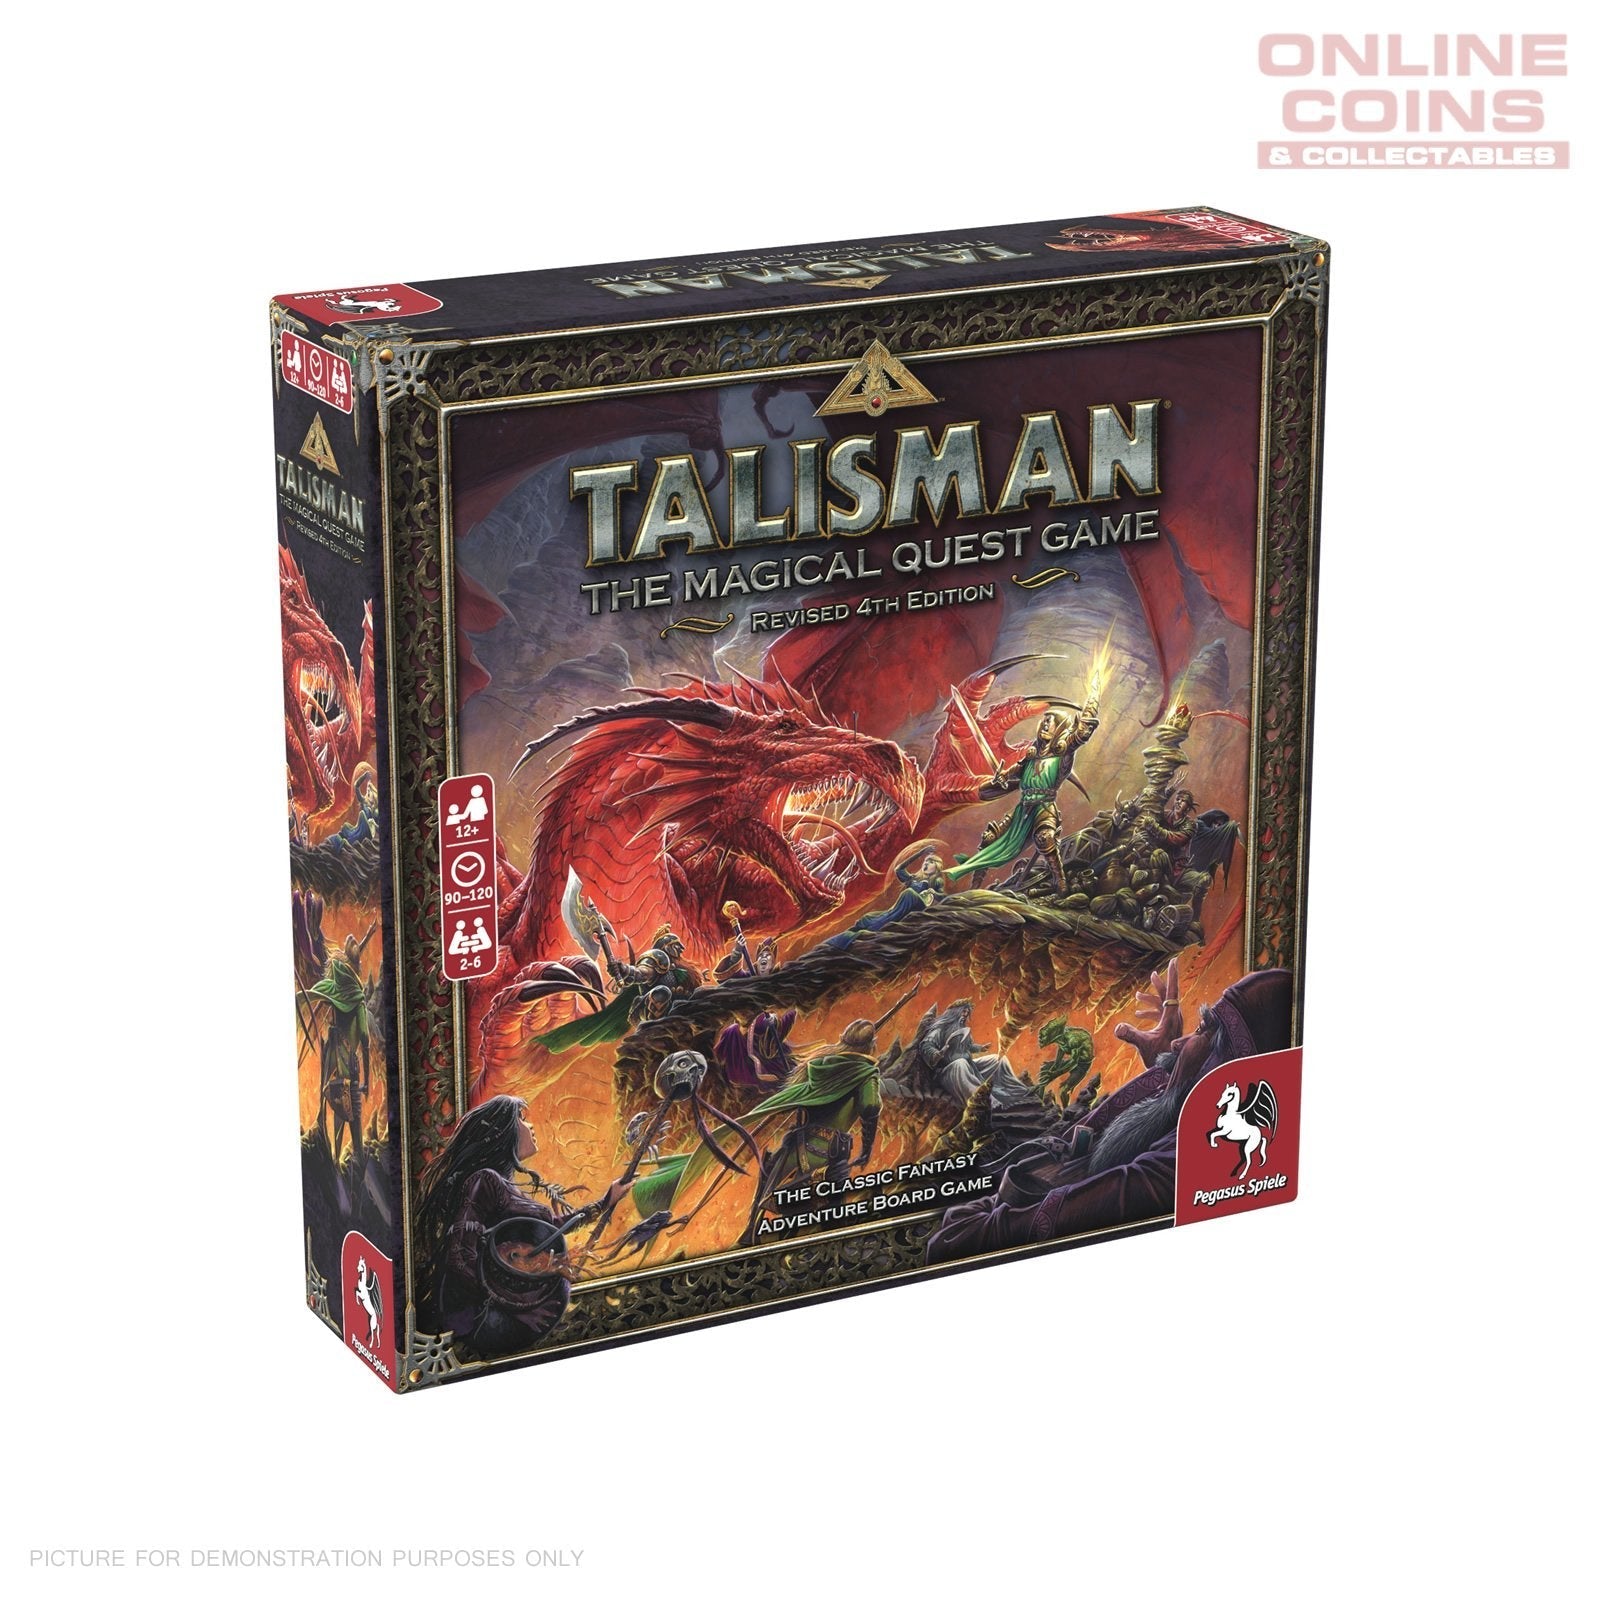 Talisman 4th Edition Fantasy Board Game